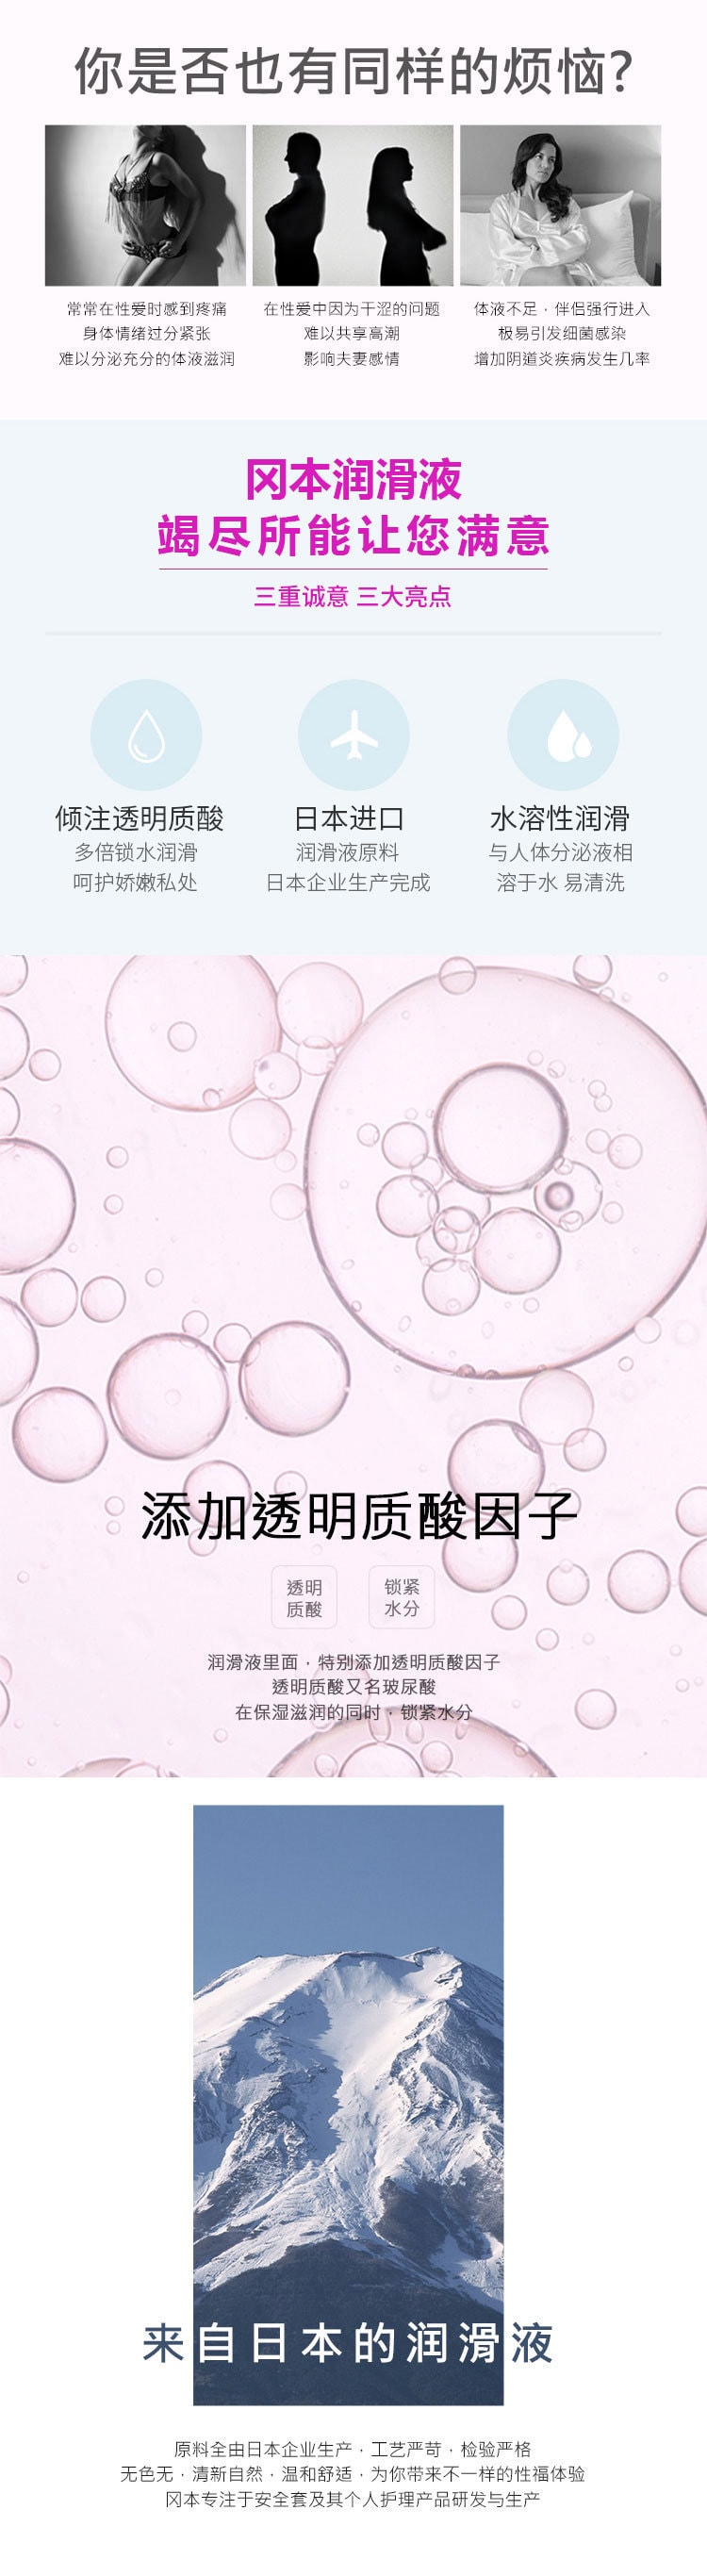 日本OKAMOTO岡本 002玻尿酸水溶性潤滑液 60ml